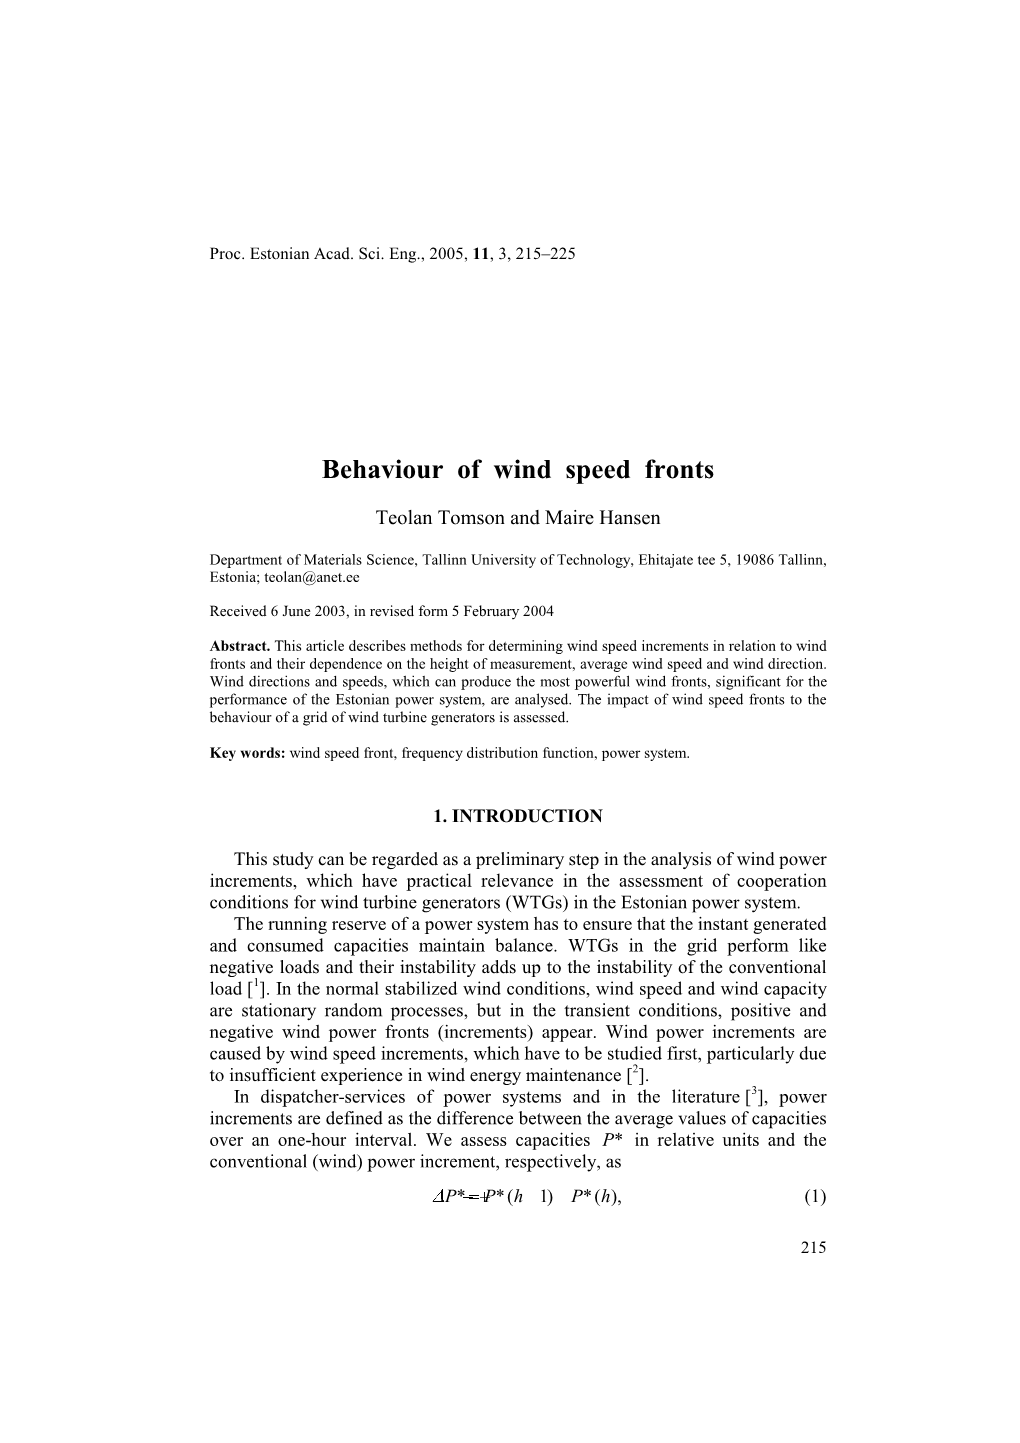 Behaviour of Wind Speed Fronts